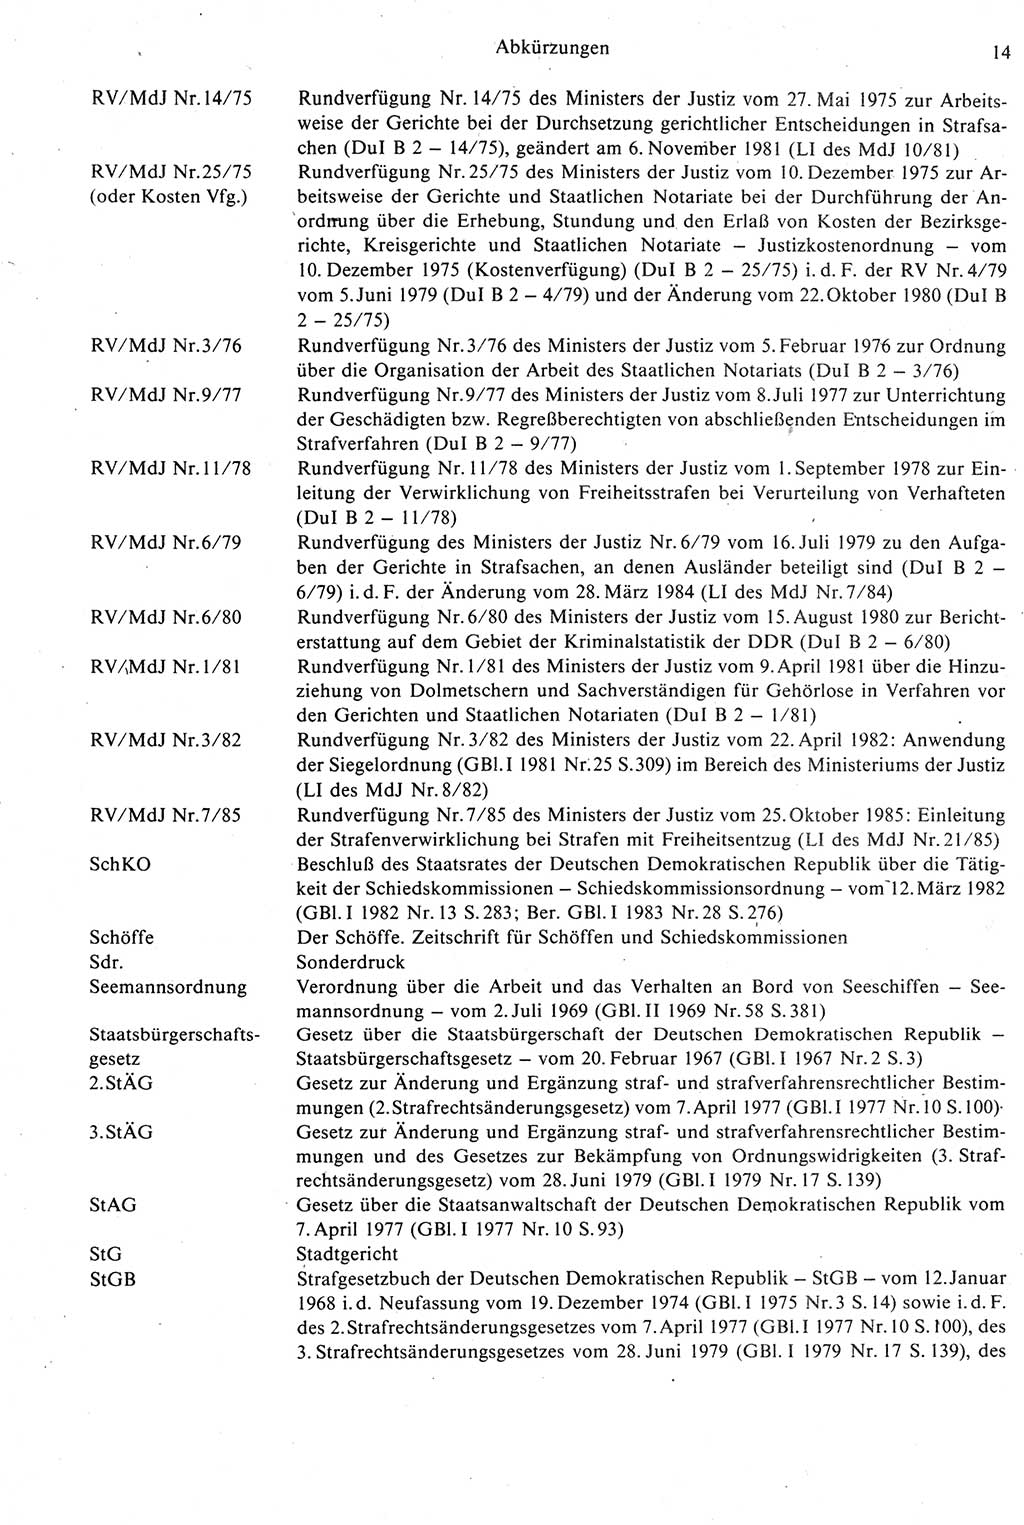 Strafprozeßrecht der DDR [Deutsche Demokratische Republik], Kommentar zur Strafprozeßordnung (StPO) 1987, Seite 14 (Strafprozeßr. DDR Komm. StPO 1987, S. 14)